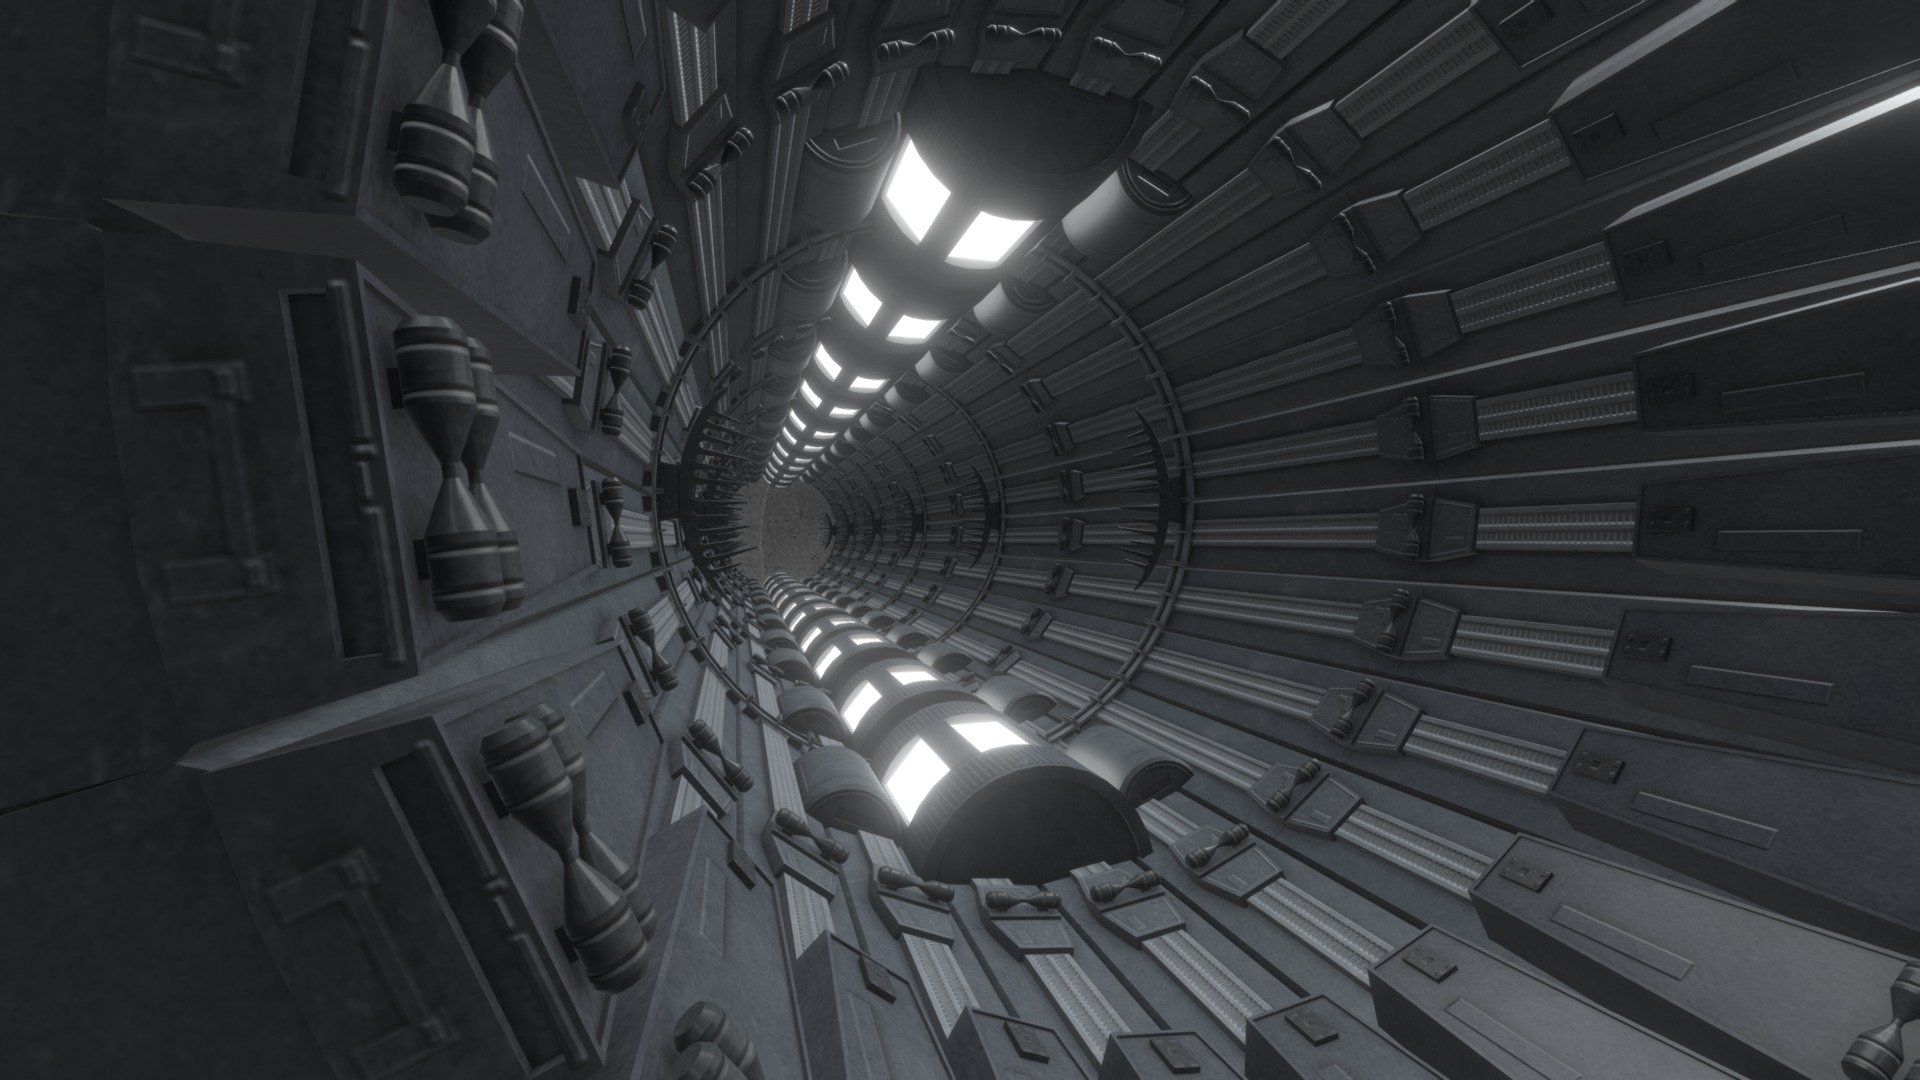 Deathstar Superlaser Lasertunnel model by Jakob Sailer [bf7086c]